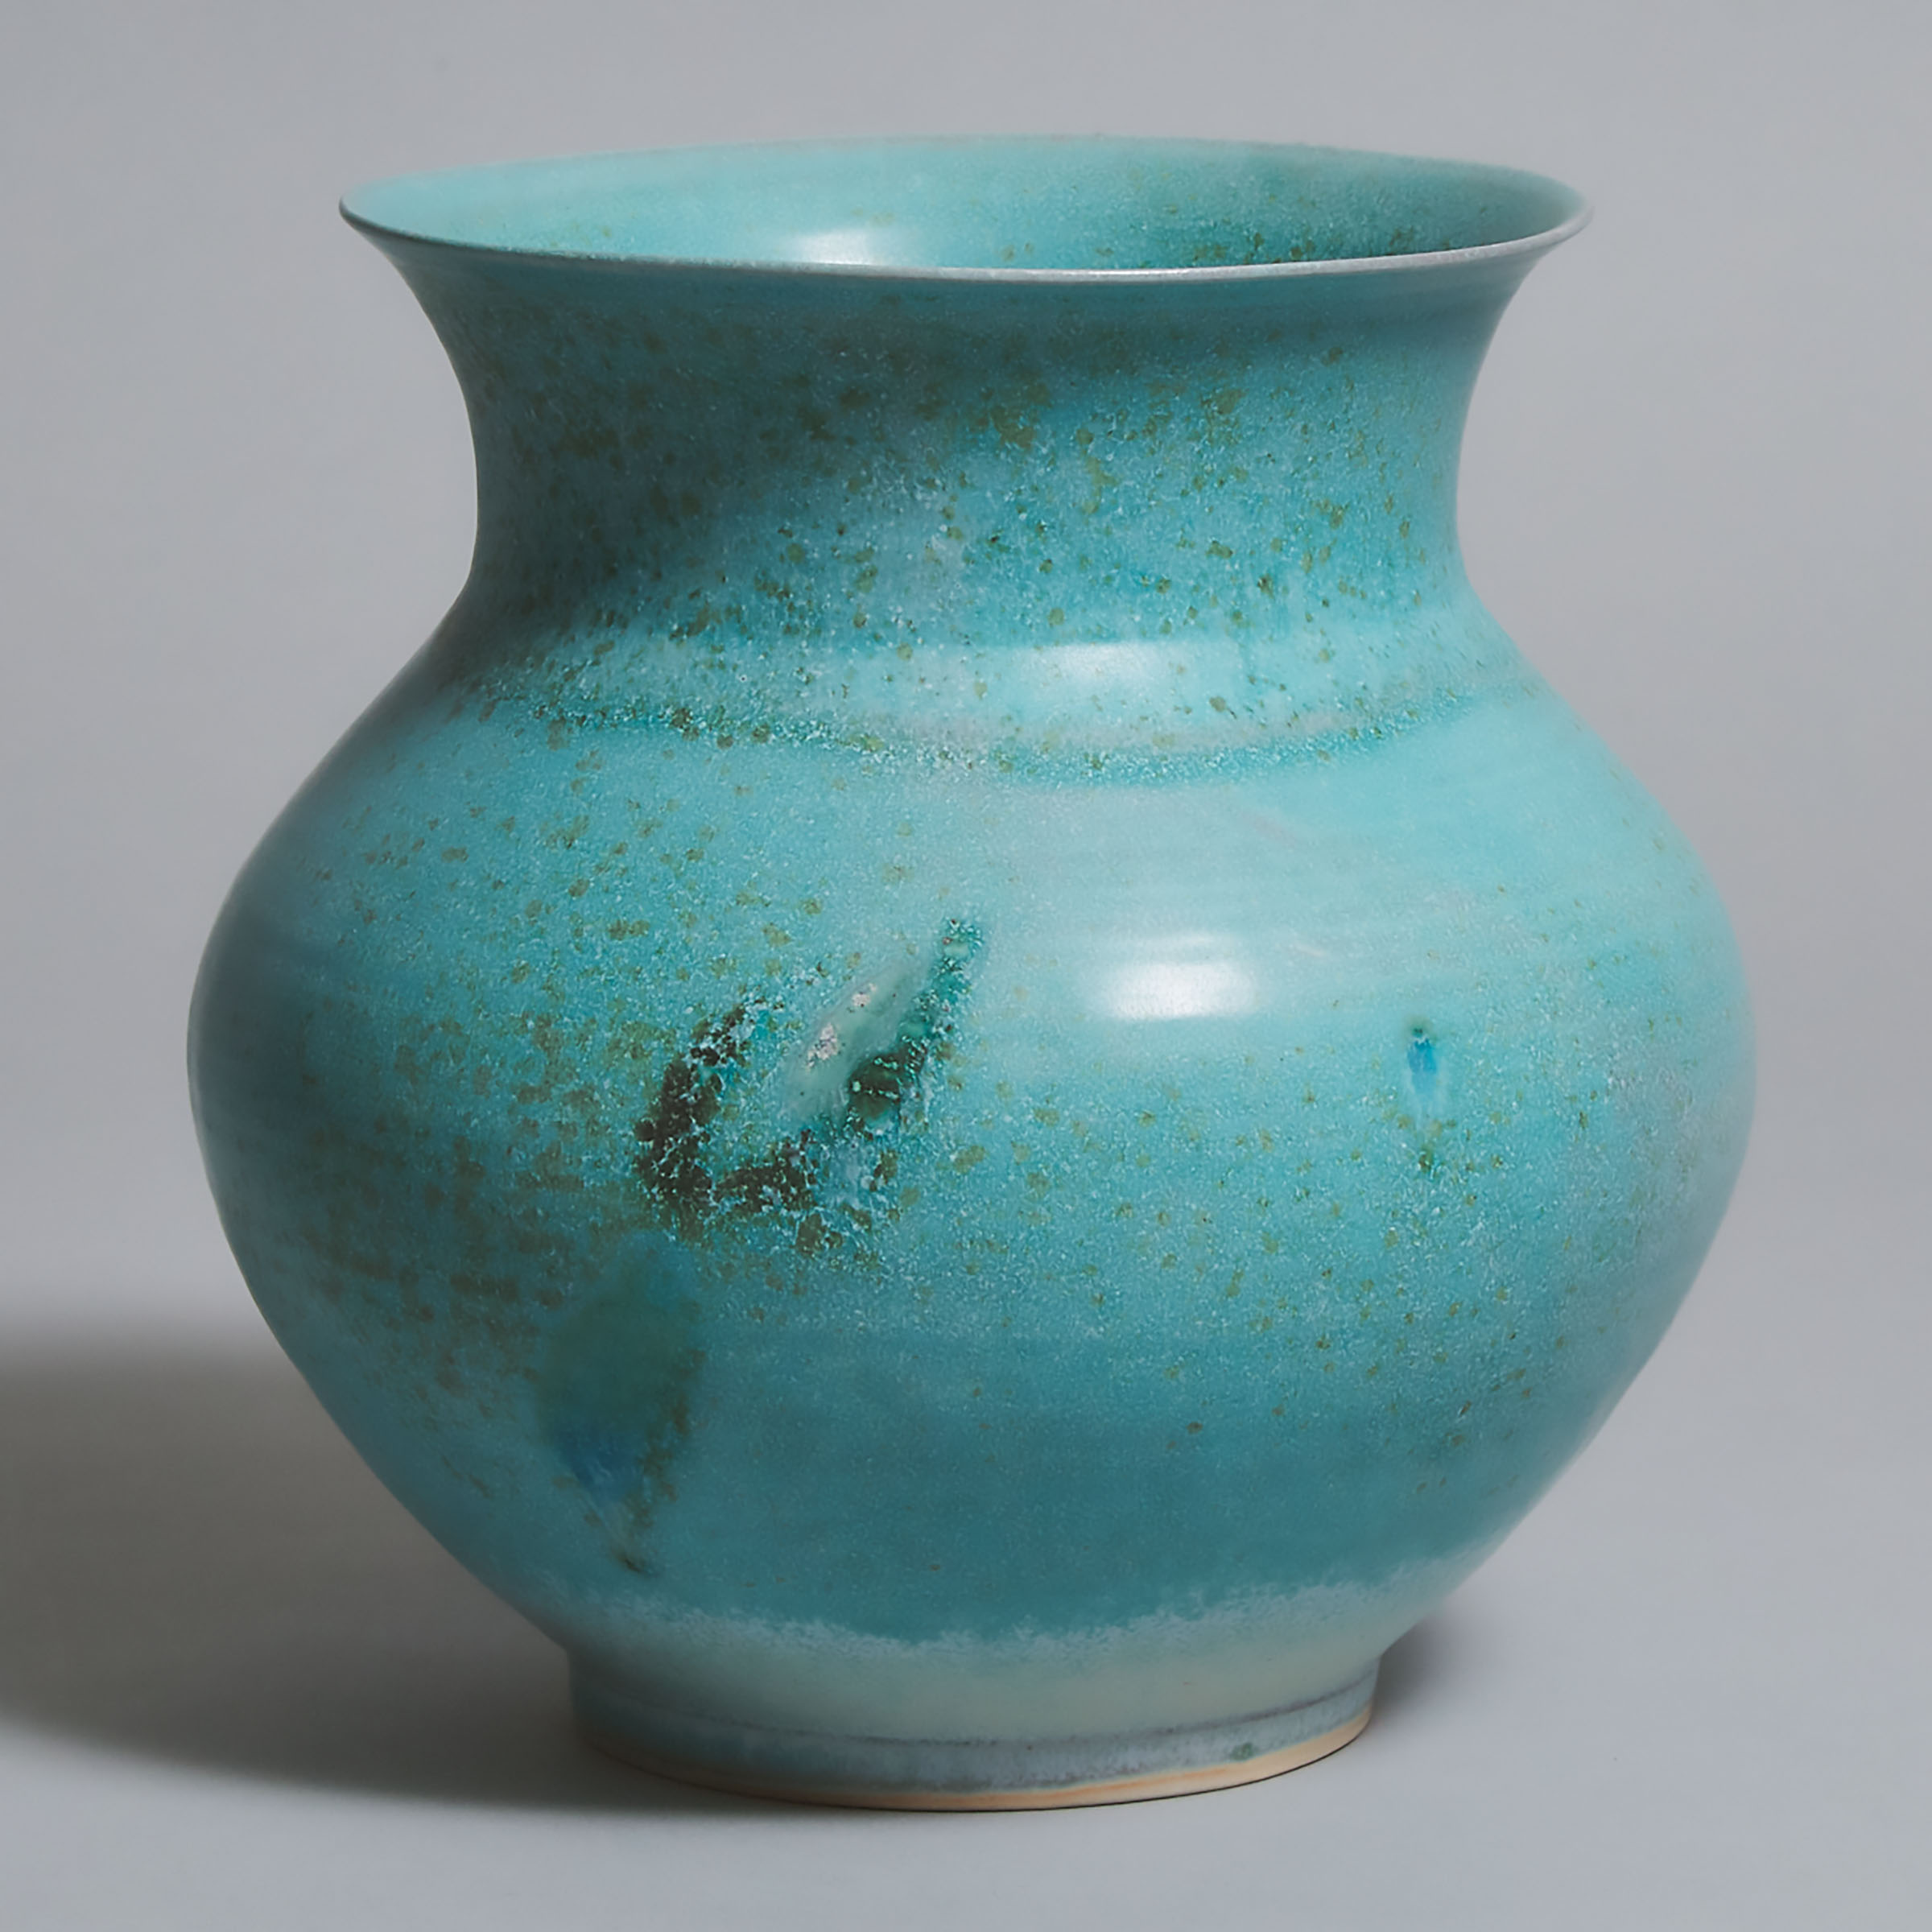 Kayo O'Young (Canadian, b.1950), Light Blue Glazed Vase, 2001 